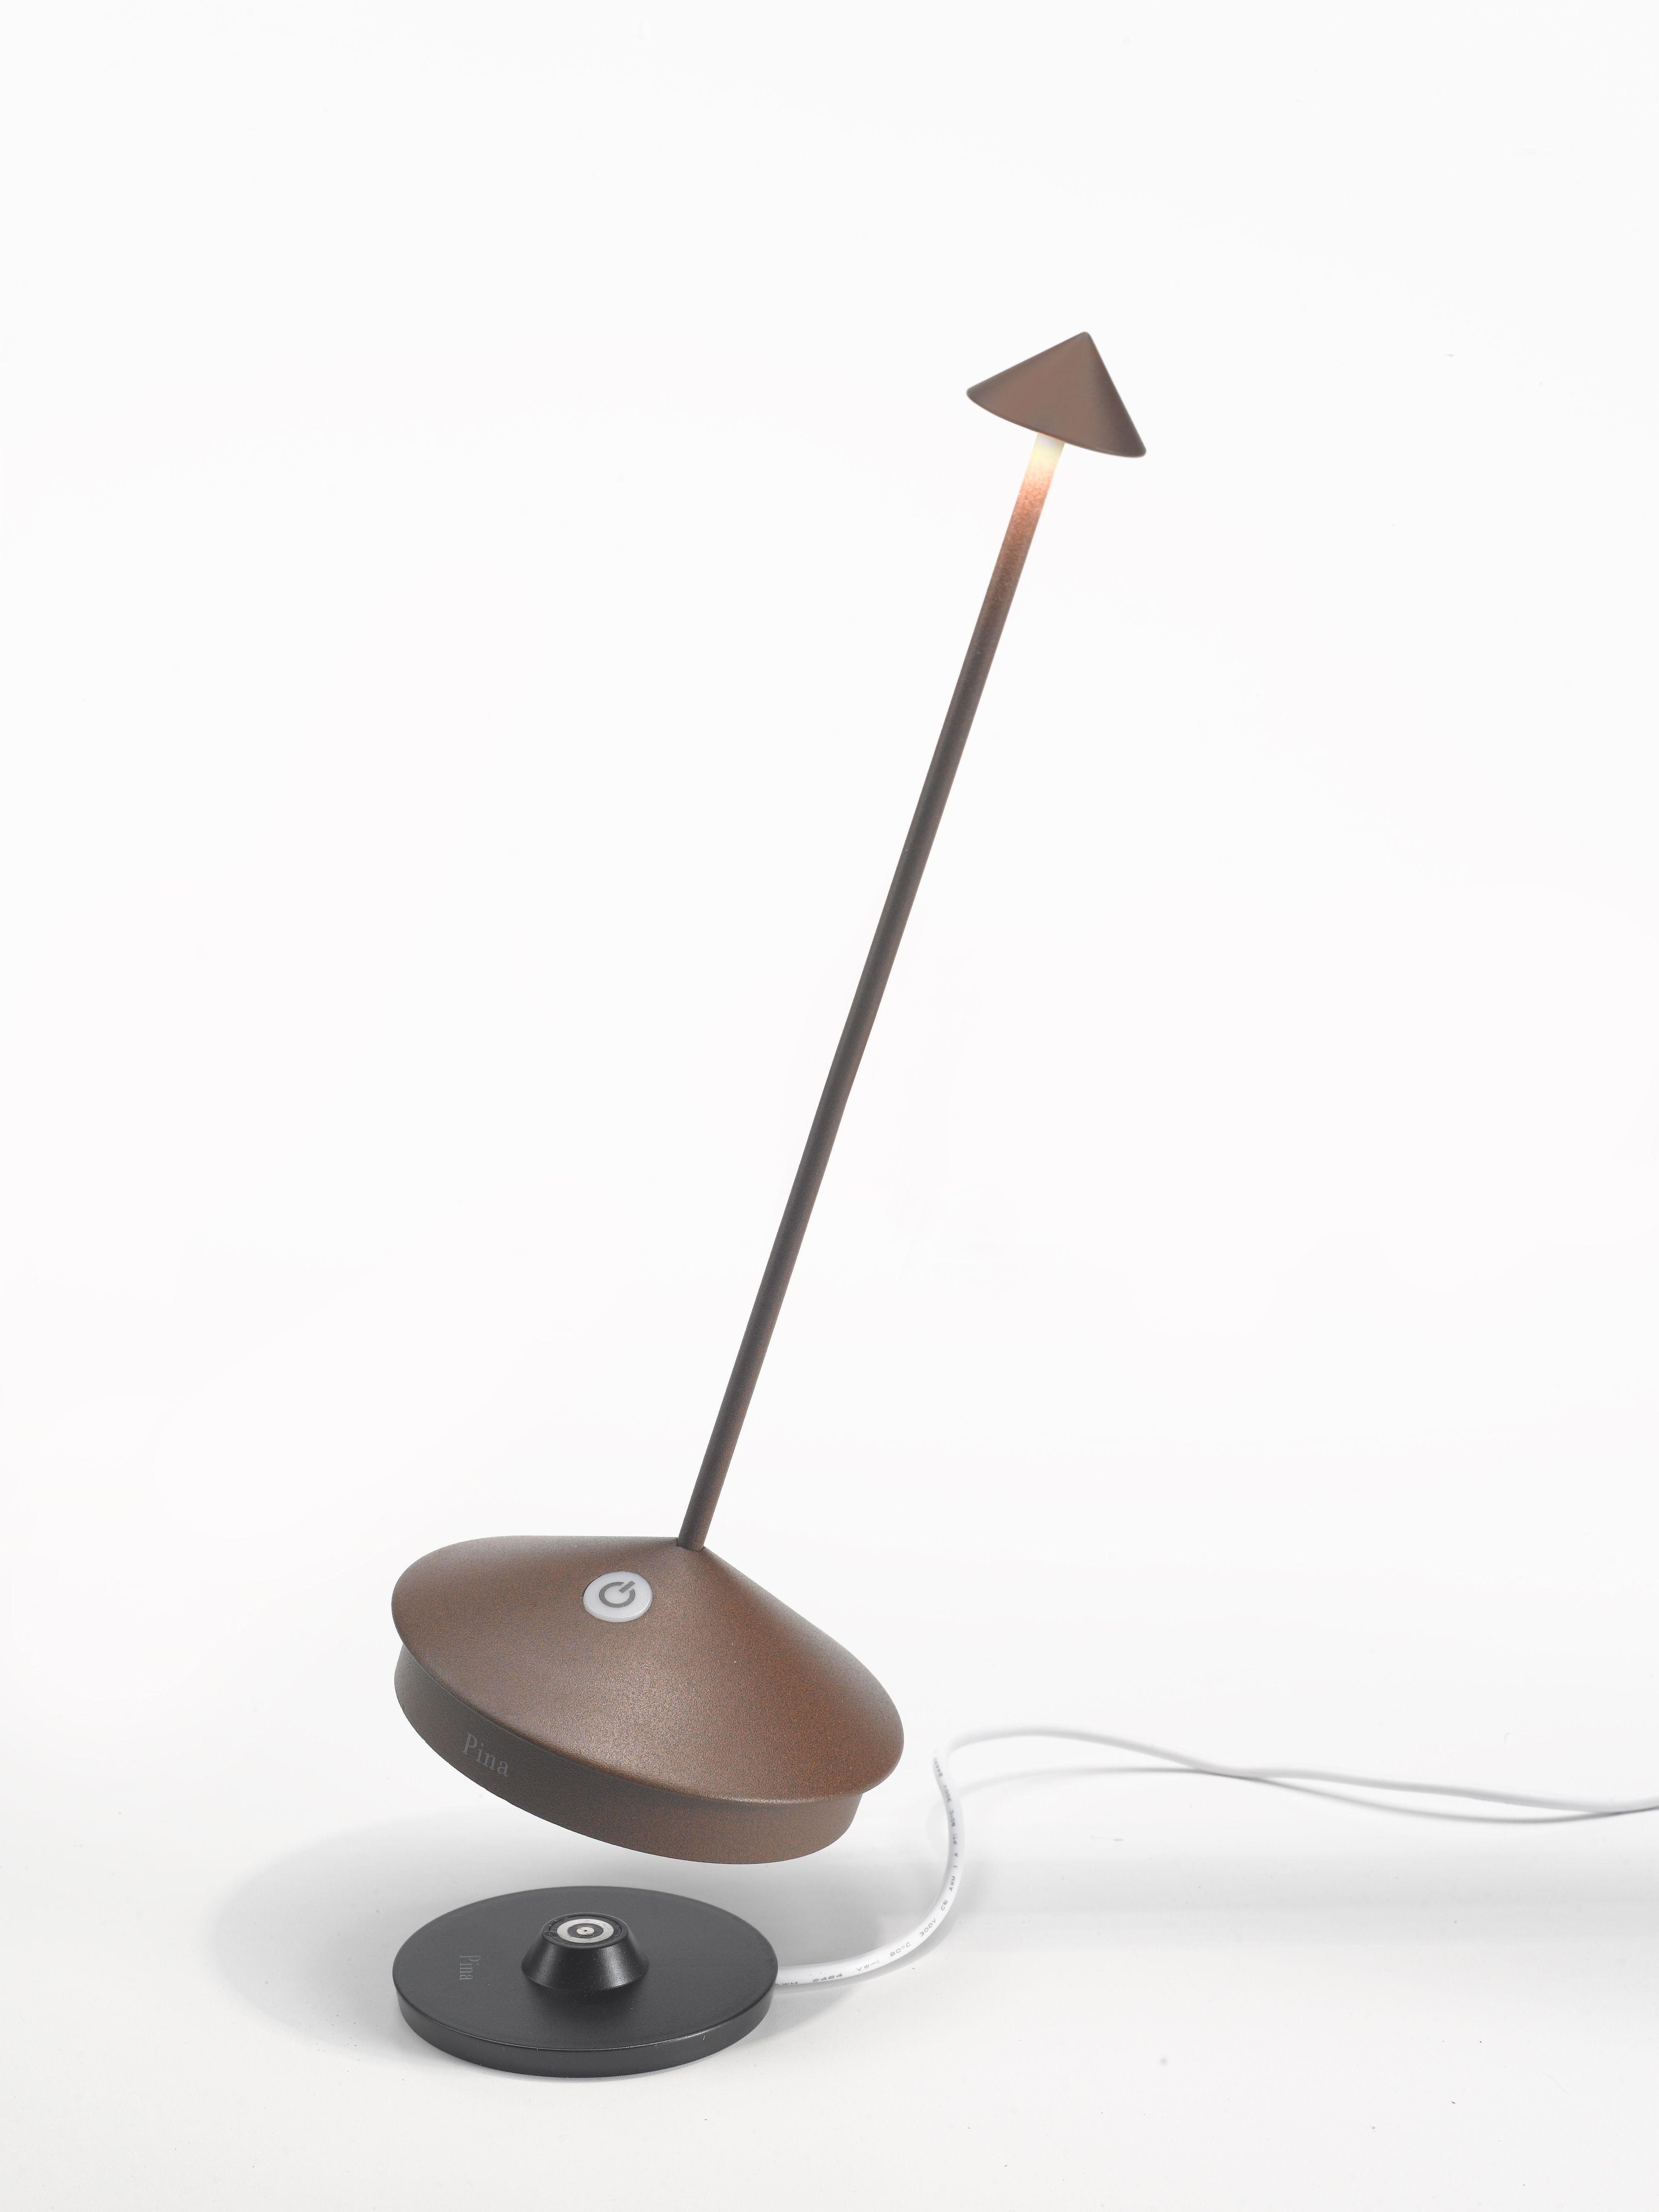 La lumière là où vous la voulez ! La lampe de table Pina Pro est sans fil, rechargeable, réglable en intensité et offre plus de 13 heures d'éclairage sans fil. Lisez ci-dessous les nombreux autres attributs et caractéristiques de la lampe qui en